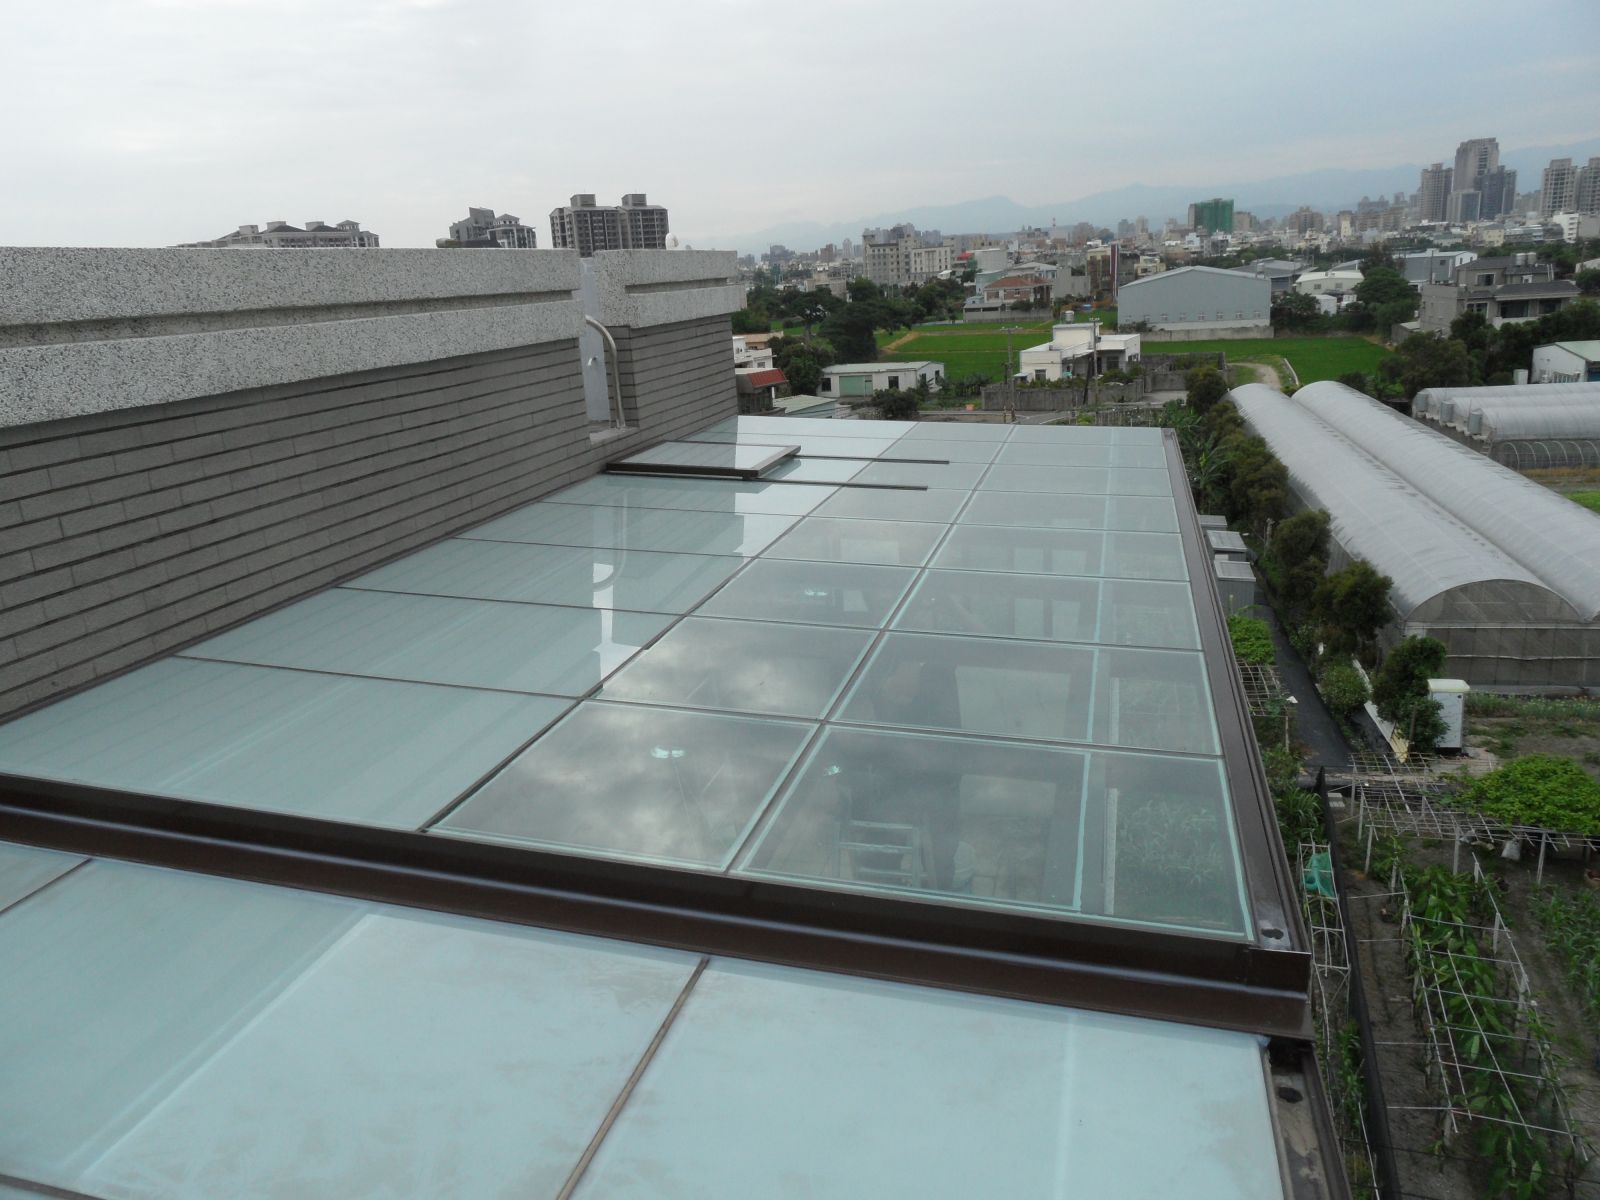 屋頂玻璃為5+5膠合玻璃.分為遮陽區及採光區,堅持品質.所以燦爛